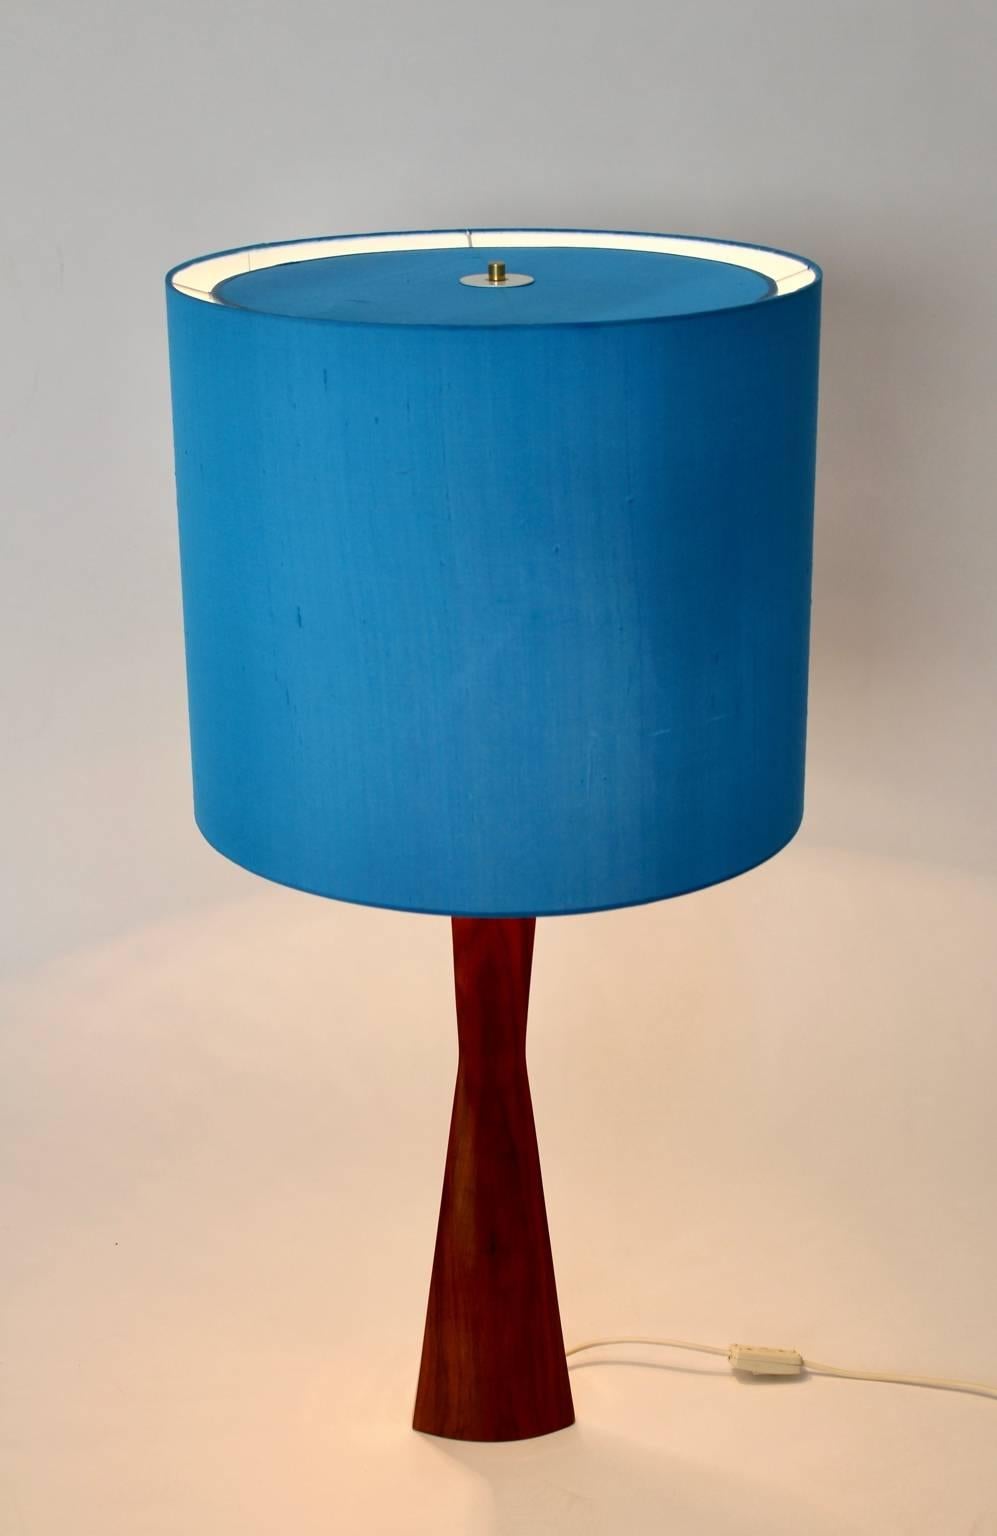 Danish Scandinavian Modern Teak Blue Table Lamp or Floor Lamp, 1960s, Denmark